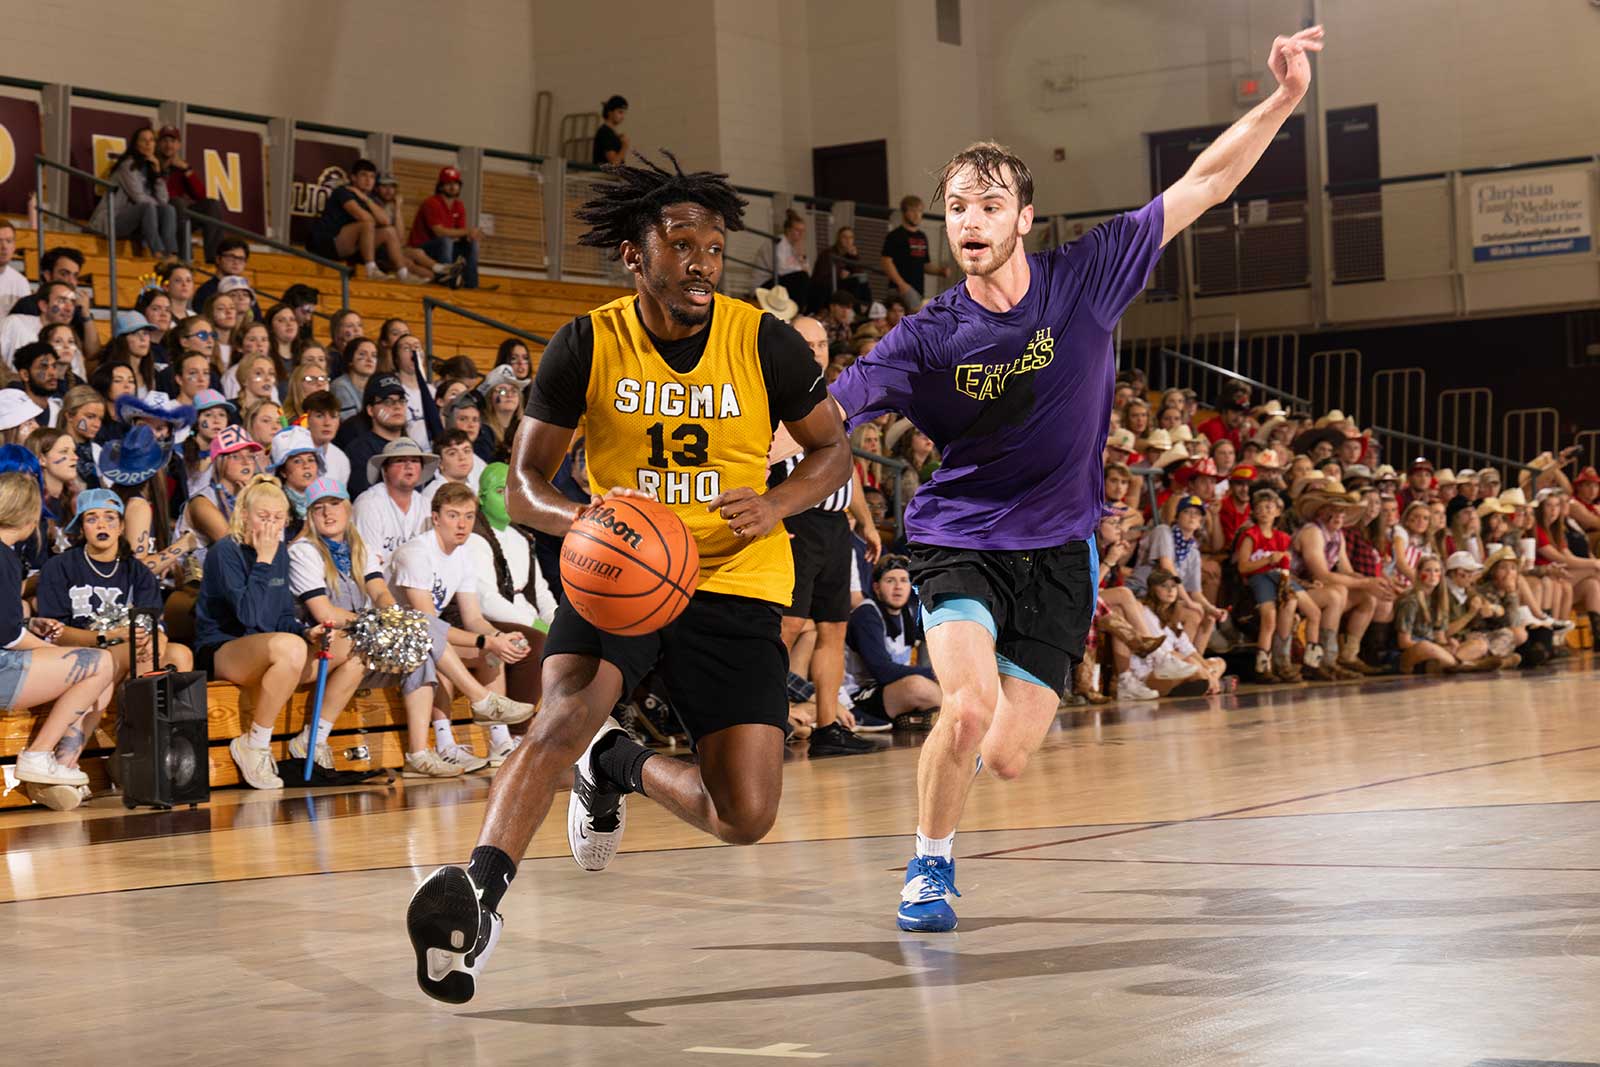 basketball intramurals in action in  student activities & groups